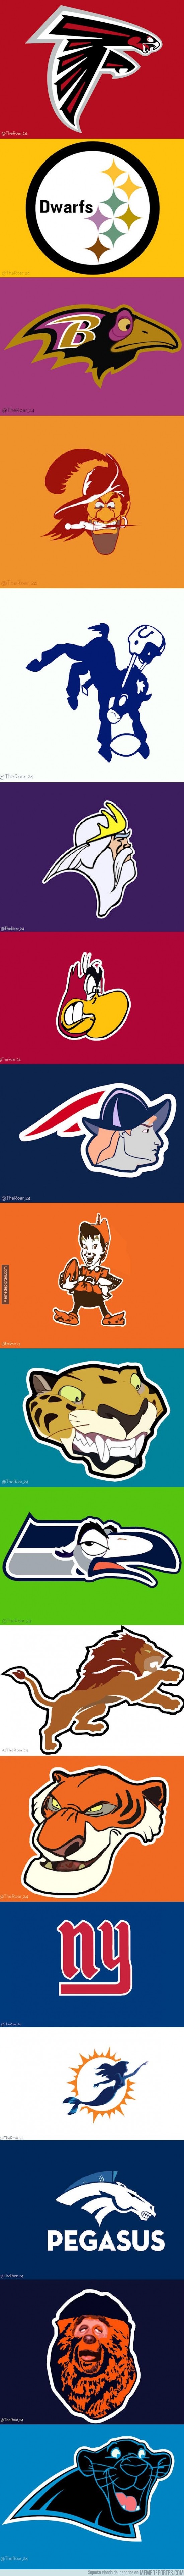 224762 - Los logos de la NFL estilo Disney